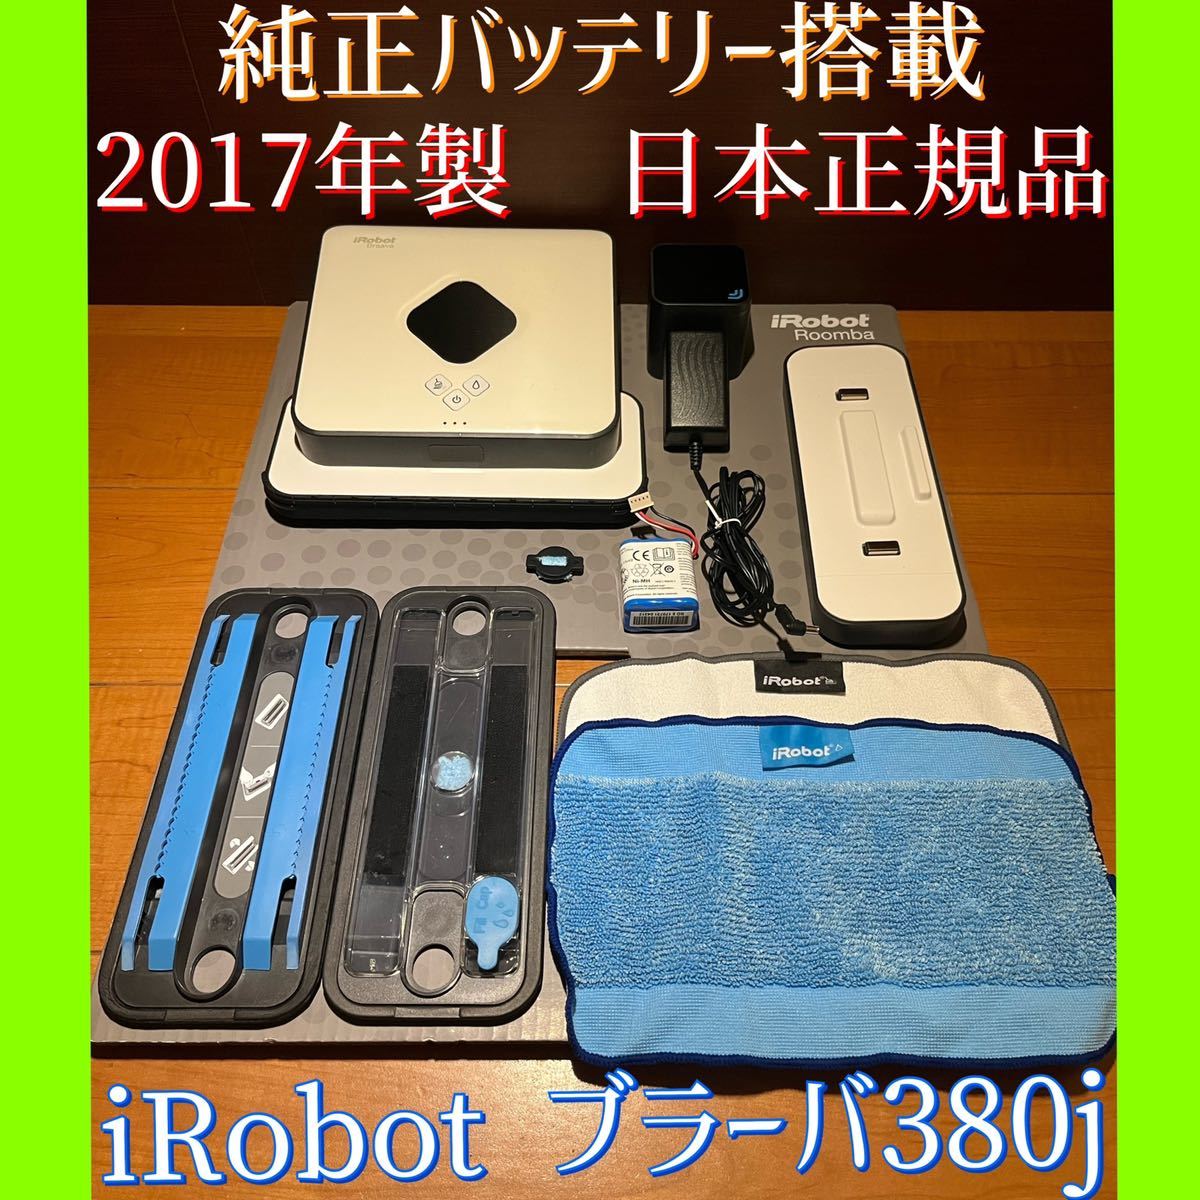 美品 2017年製 日本正規品 純正バッテリー搭載 iRobot ブラーバ380j 大掃除 ロボット掃除機 時短家電 年末 クリスマスプレゼント 